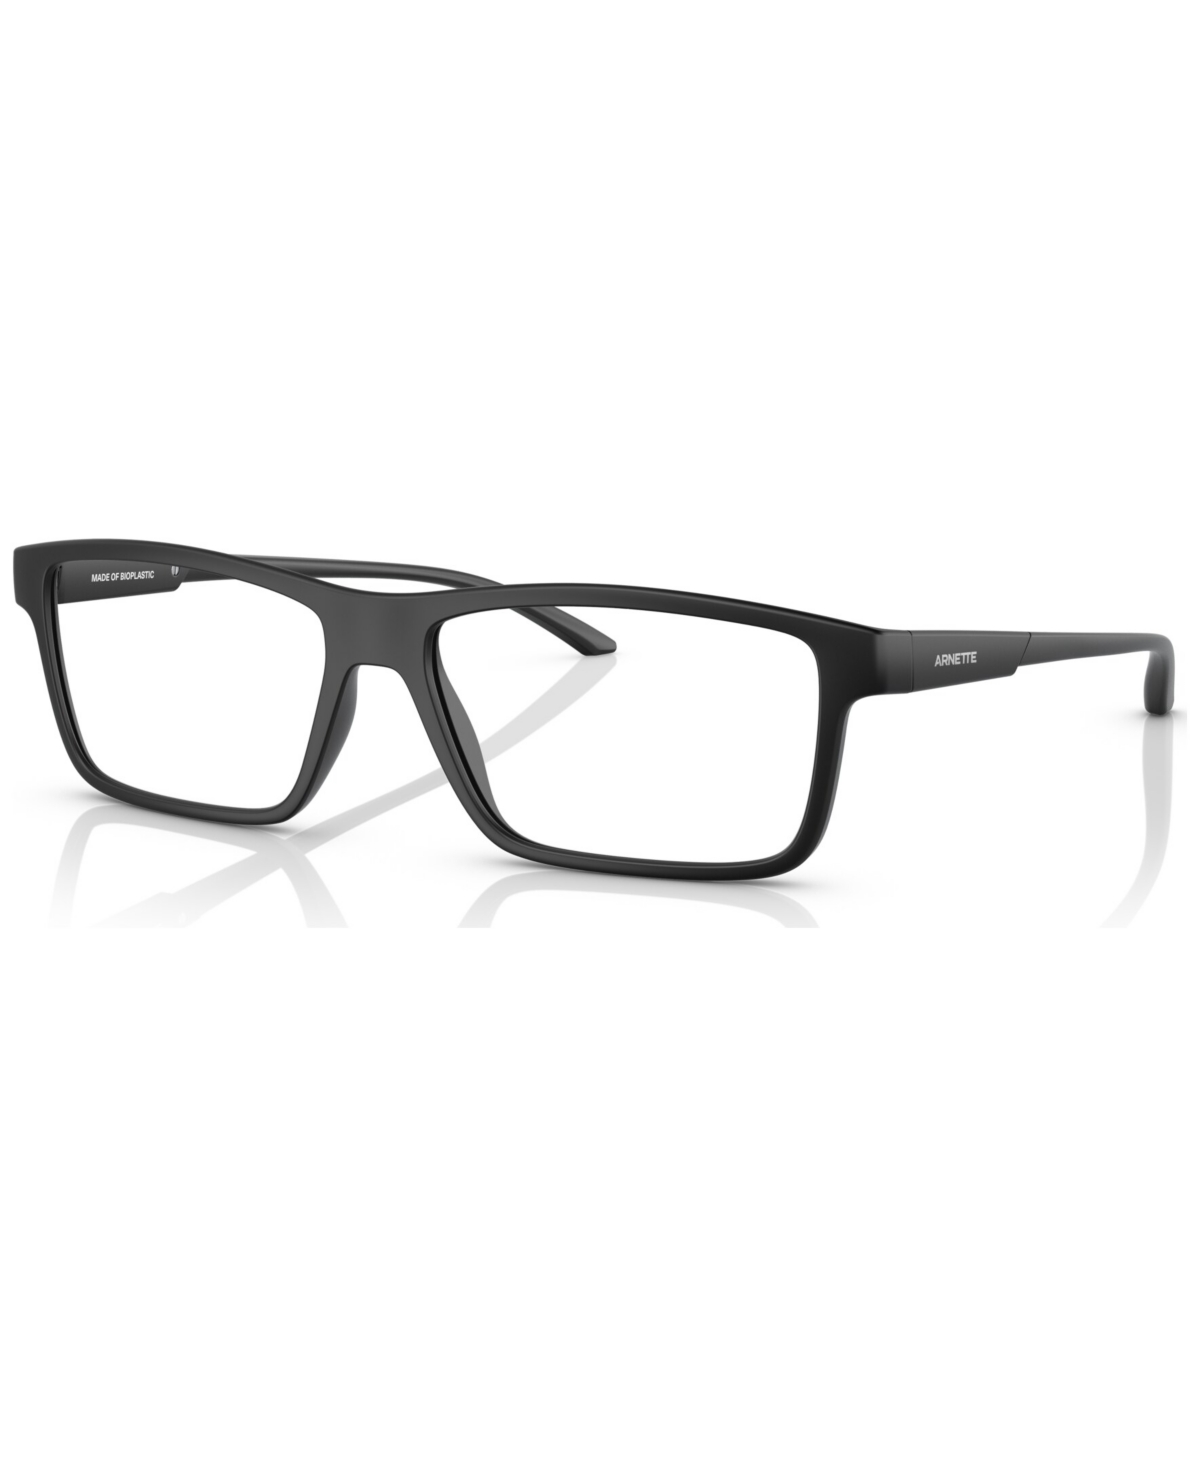 Unisex Cross Fade Ii Eyeglasses, AN7216 56 - Matte Black